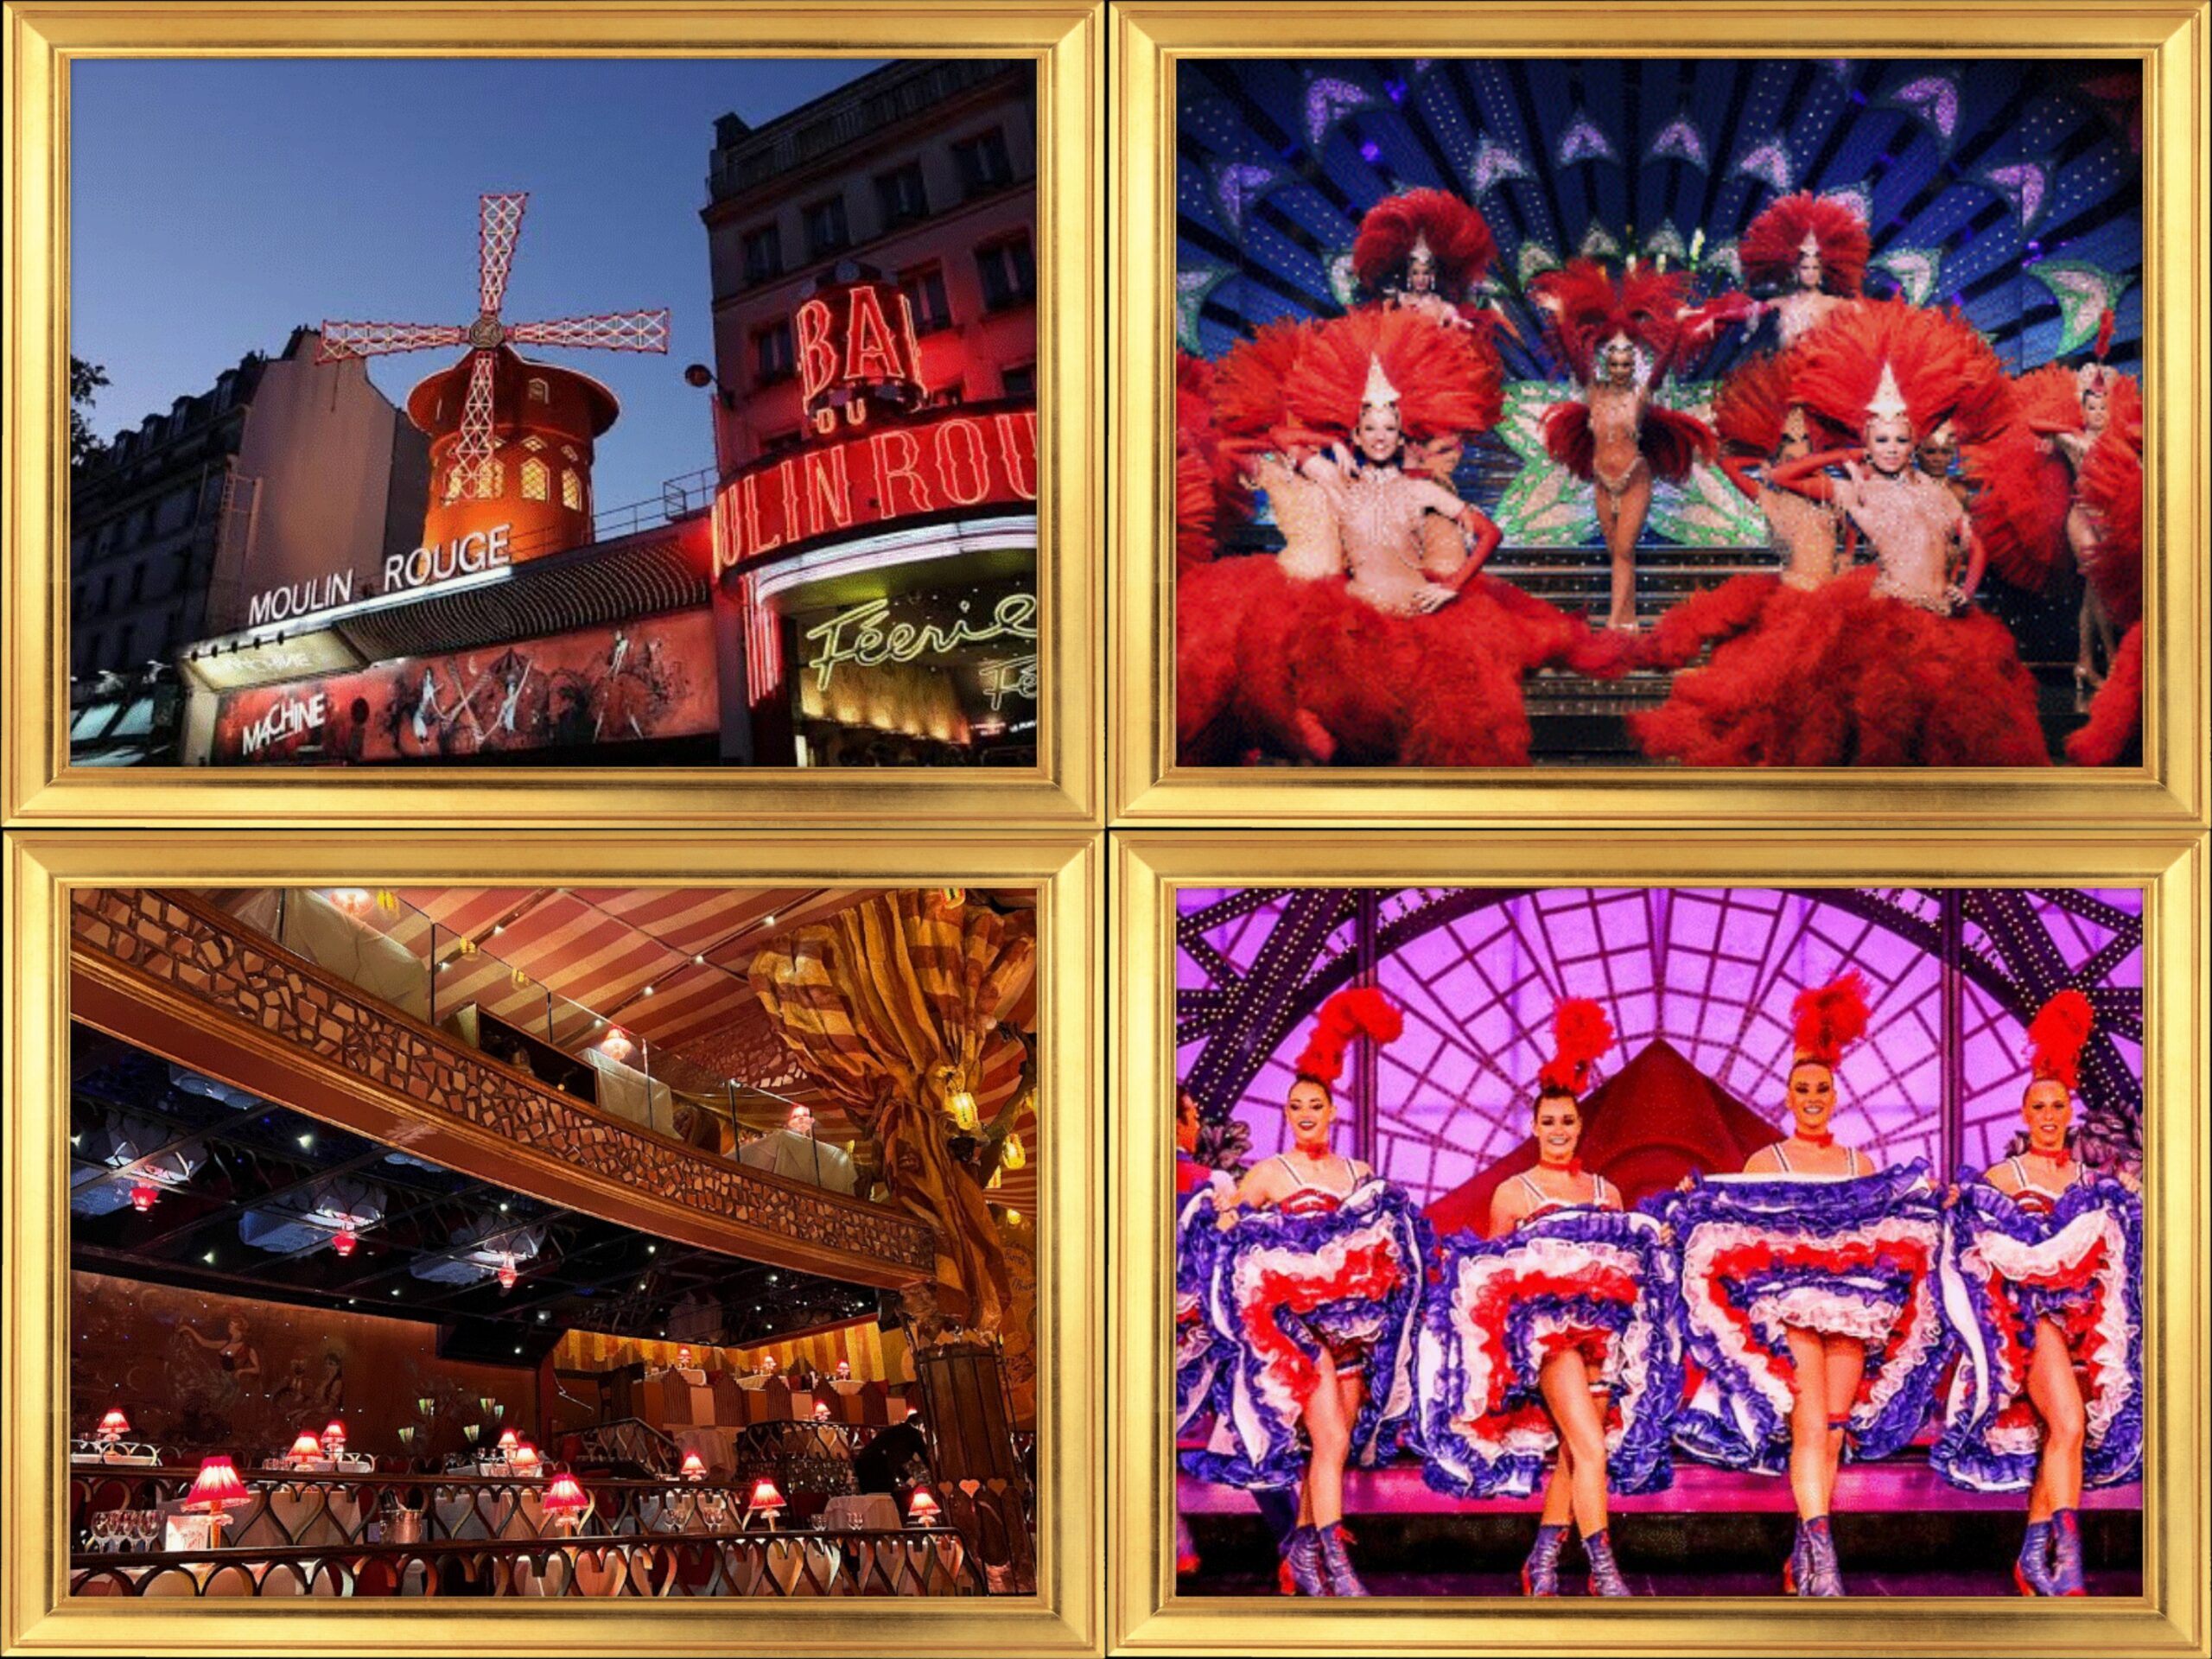 Celebrul cabaret Moulin Rouge din Paris a rămas fără aripi. Așa ceva nu s-a mai întâmplat niciodată